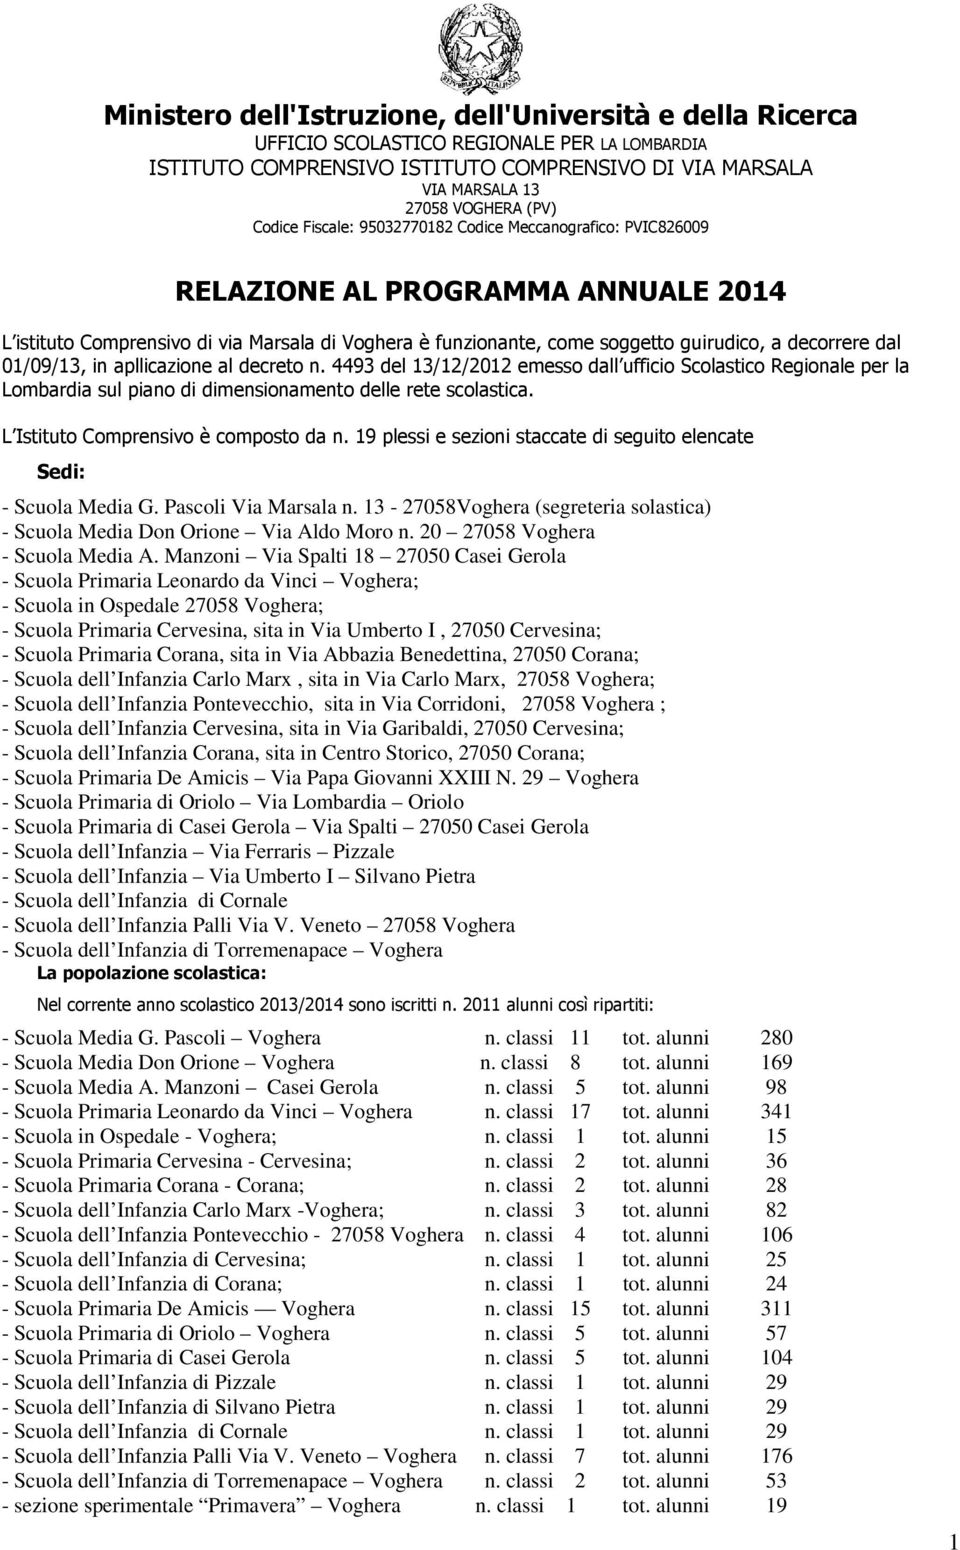 dal 01/09/13, in apllicazione al decreto n. 4493 del 13/12/2012 emesso dall ufficio Scolastico Regionale per la Lombardia sul piano di dimensionamento delle rete scolastica.